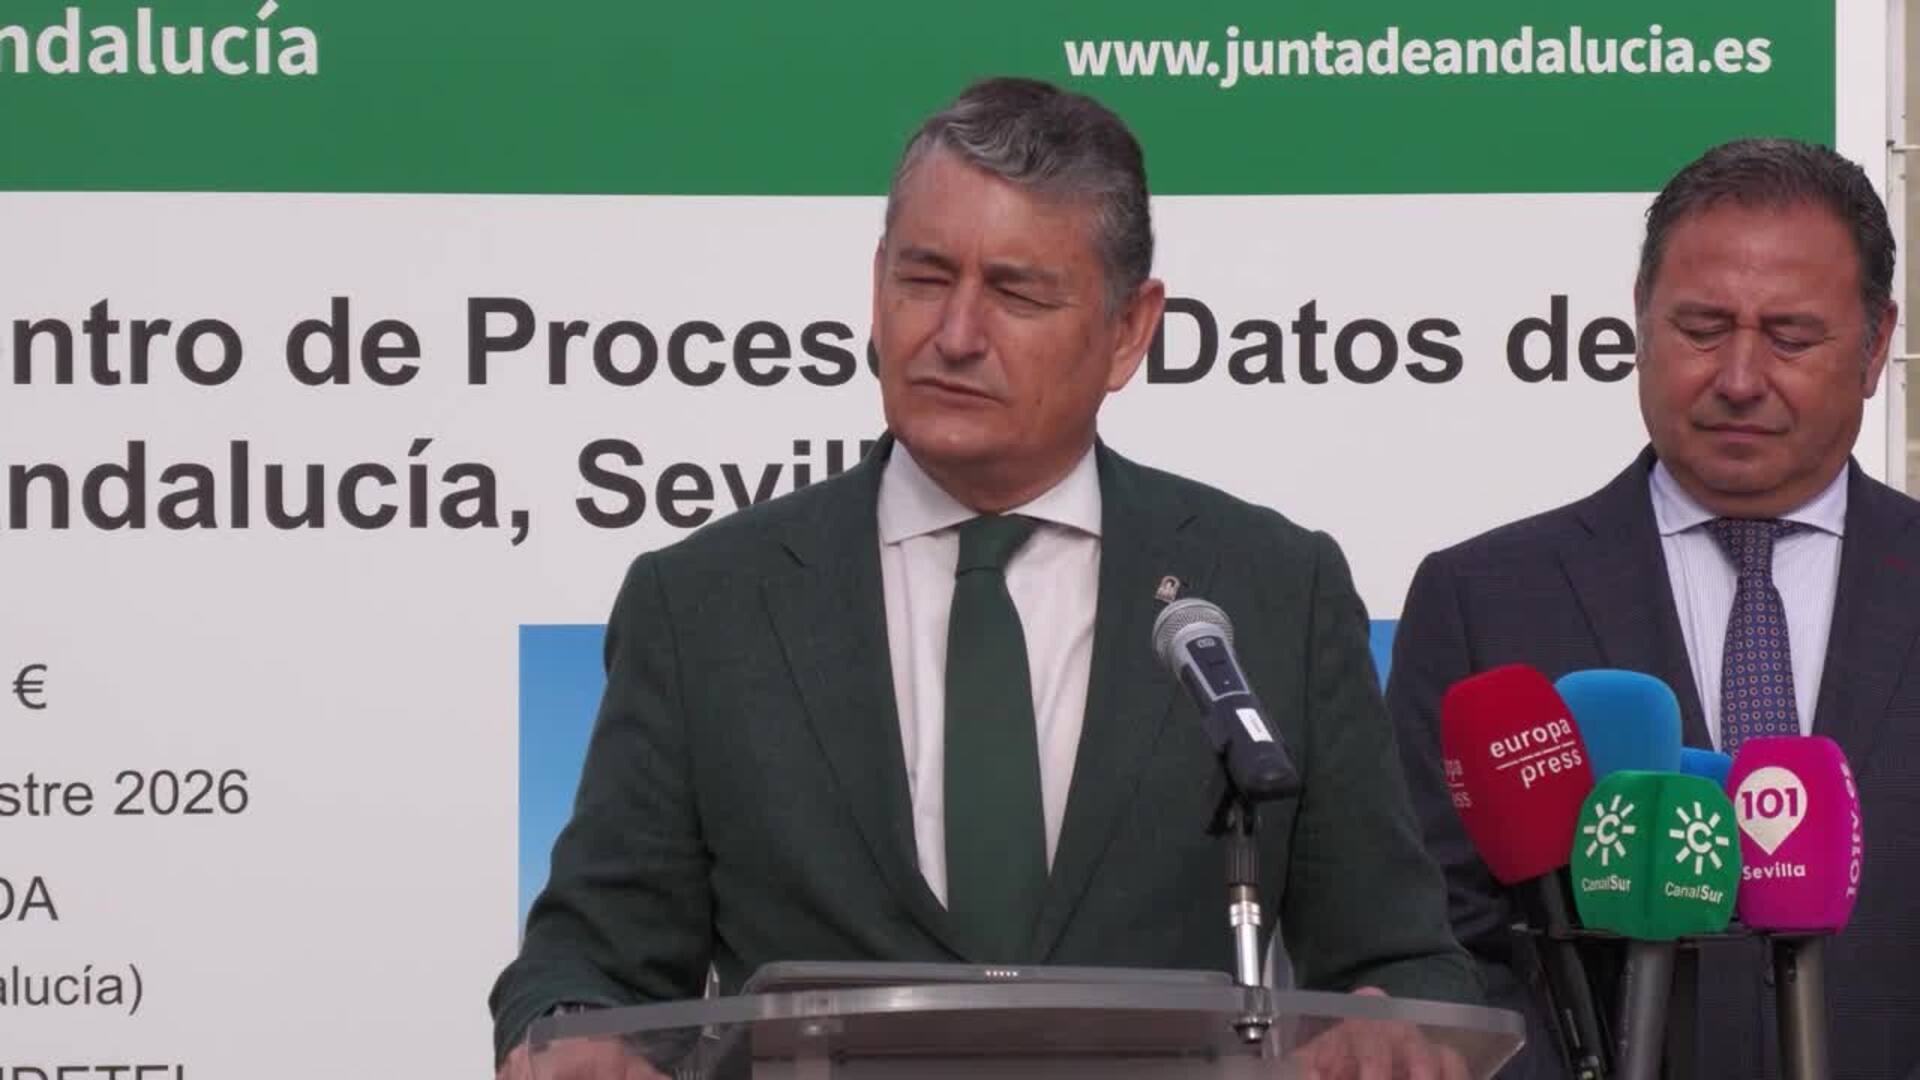 Junta condena el "insulto" de Aragonès a Andalucía y exige a Montero negociar financiación